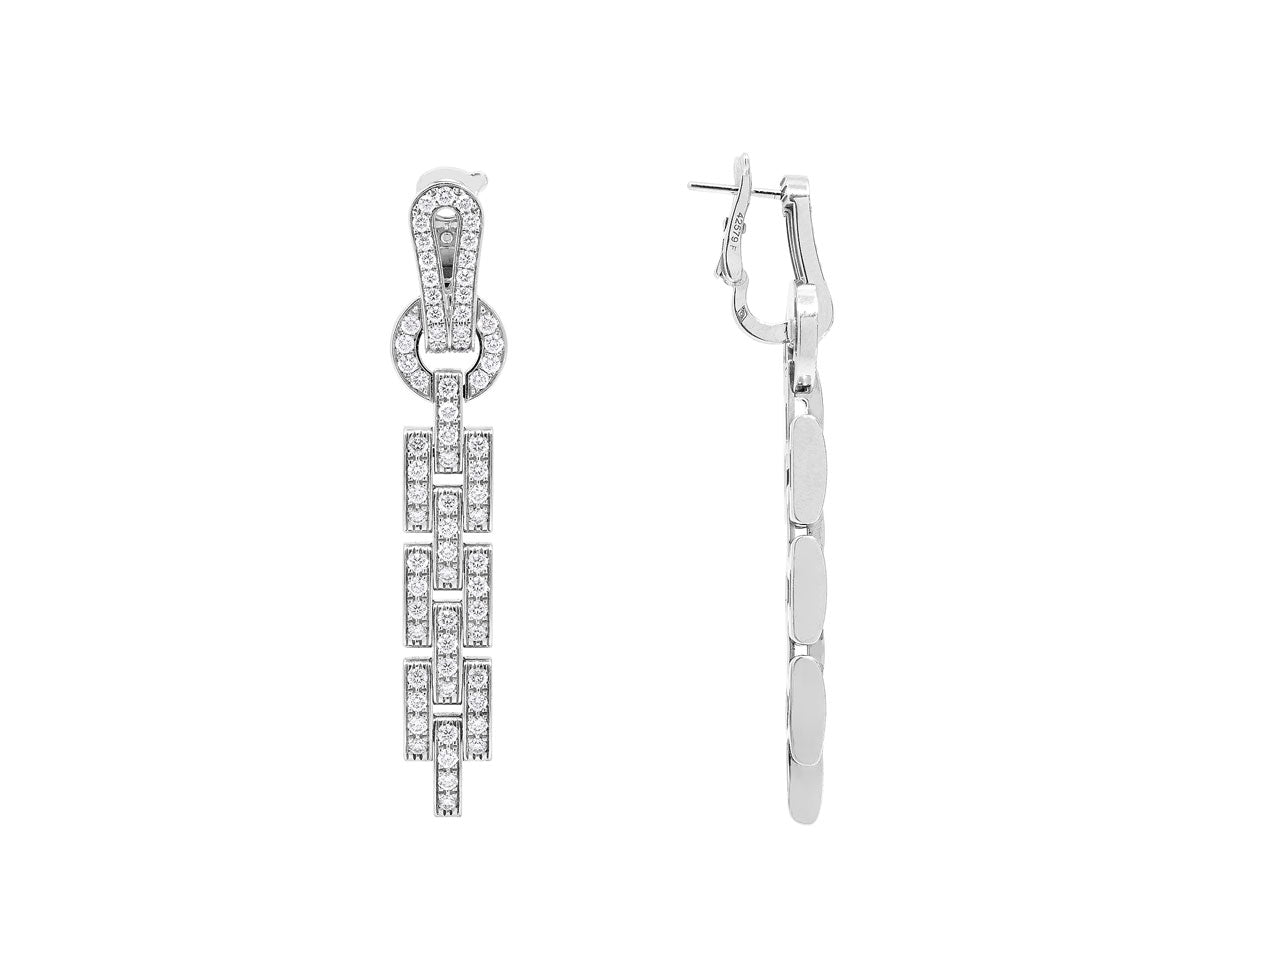 Cartier 'Agrafe' Diamond Earrings in 18K White Gold